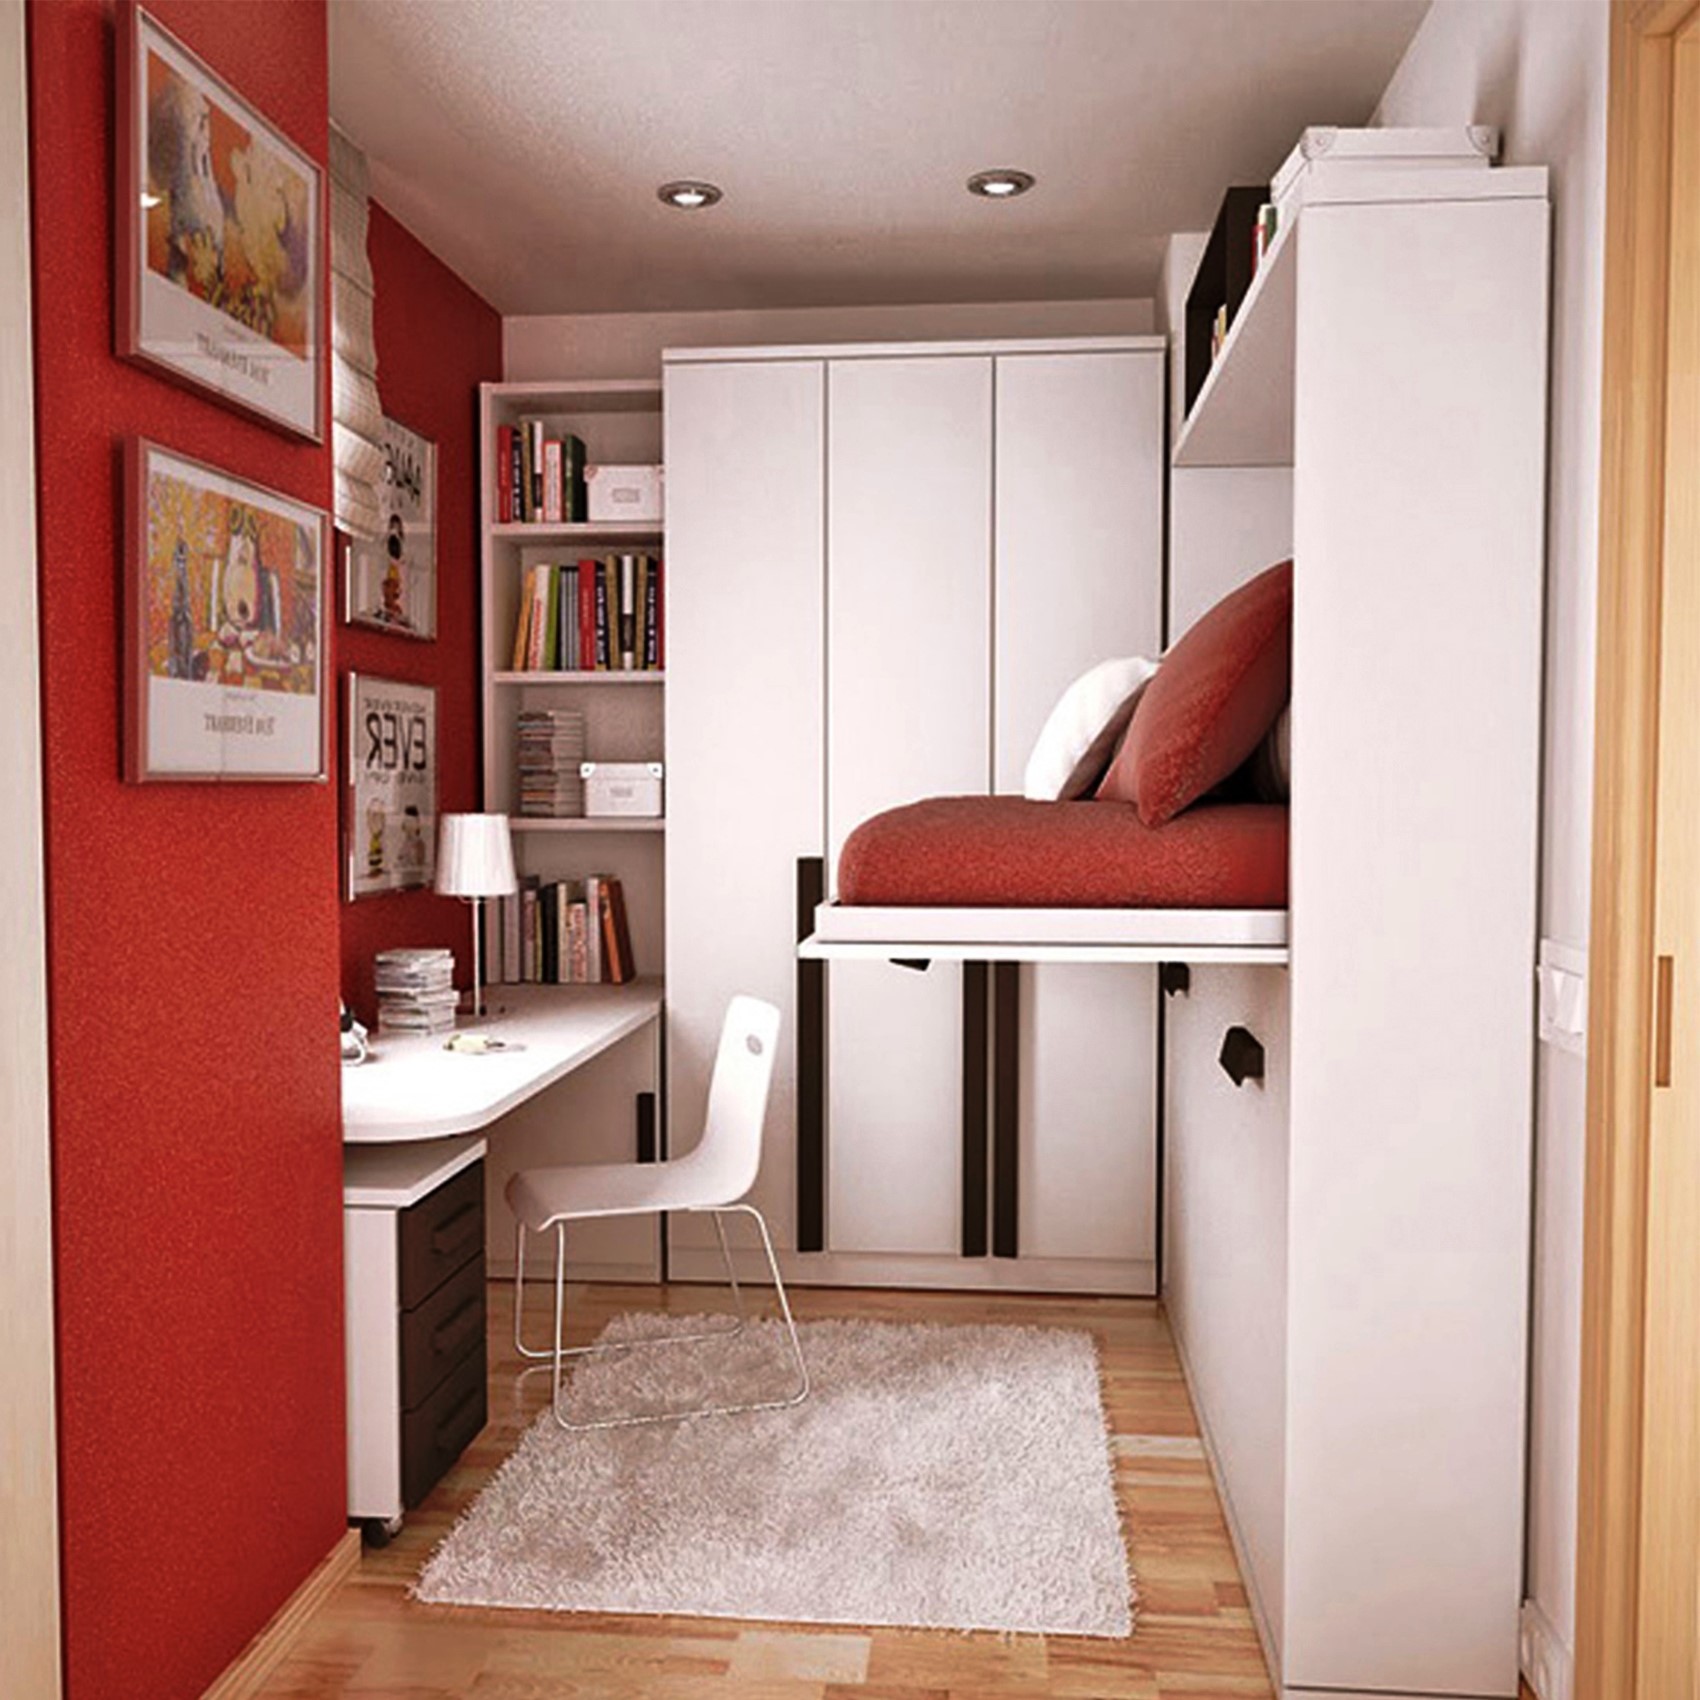 دکوراسیون و چیدمان اتاق خواب کوچک؛ ترفندهای ساده برای استفاده بیشتر از فضا